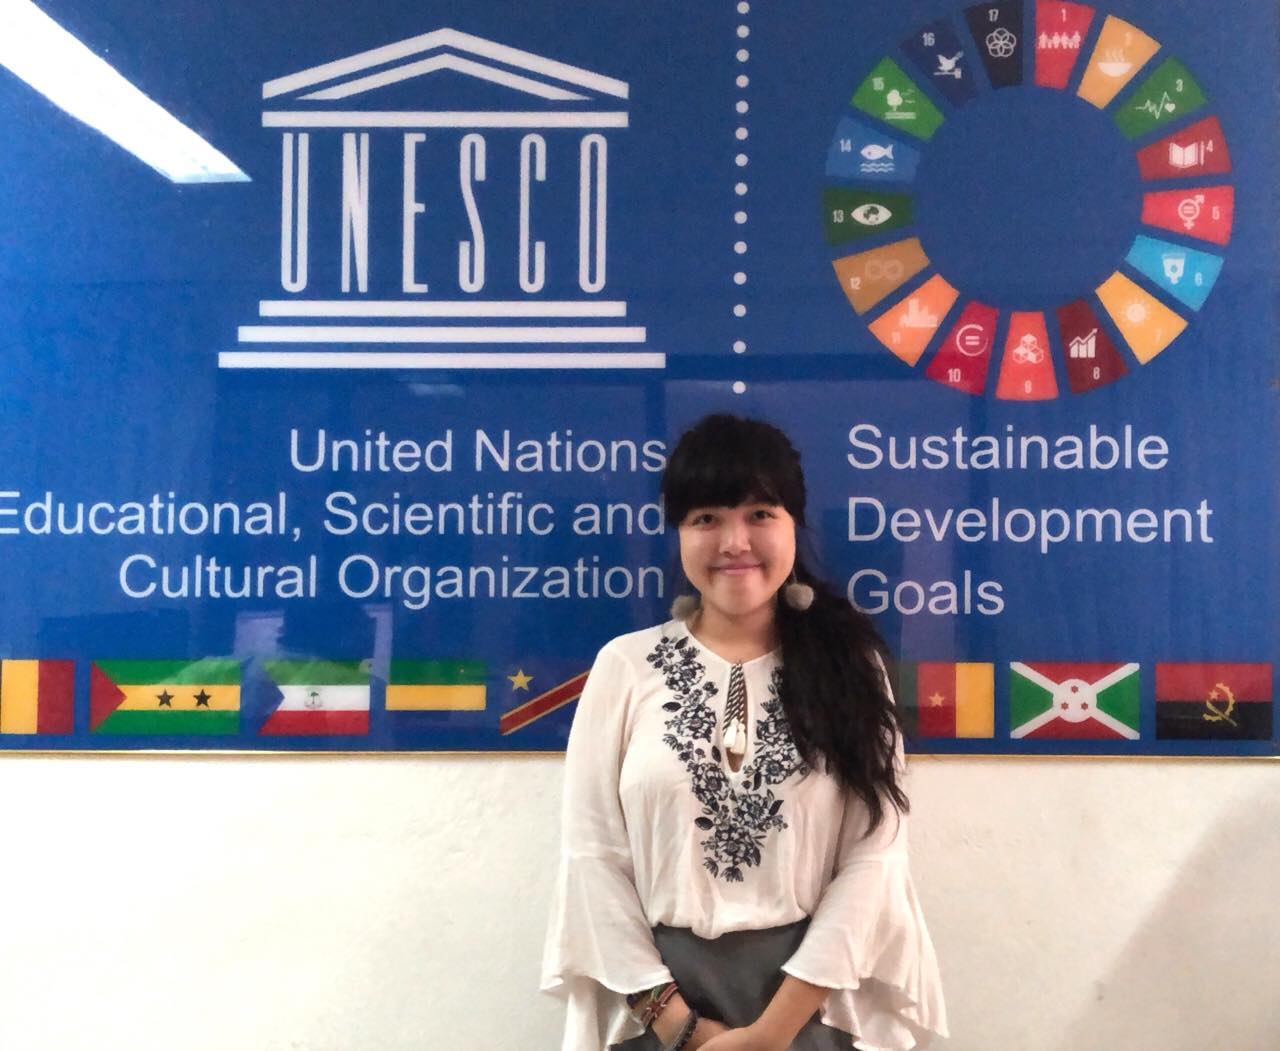 Last day in UNESCO